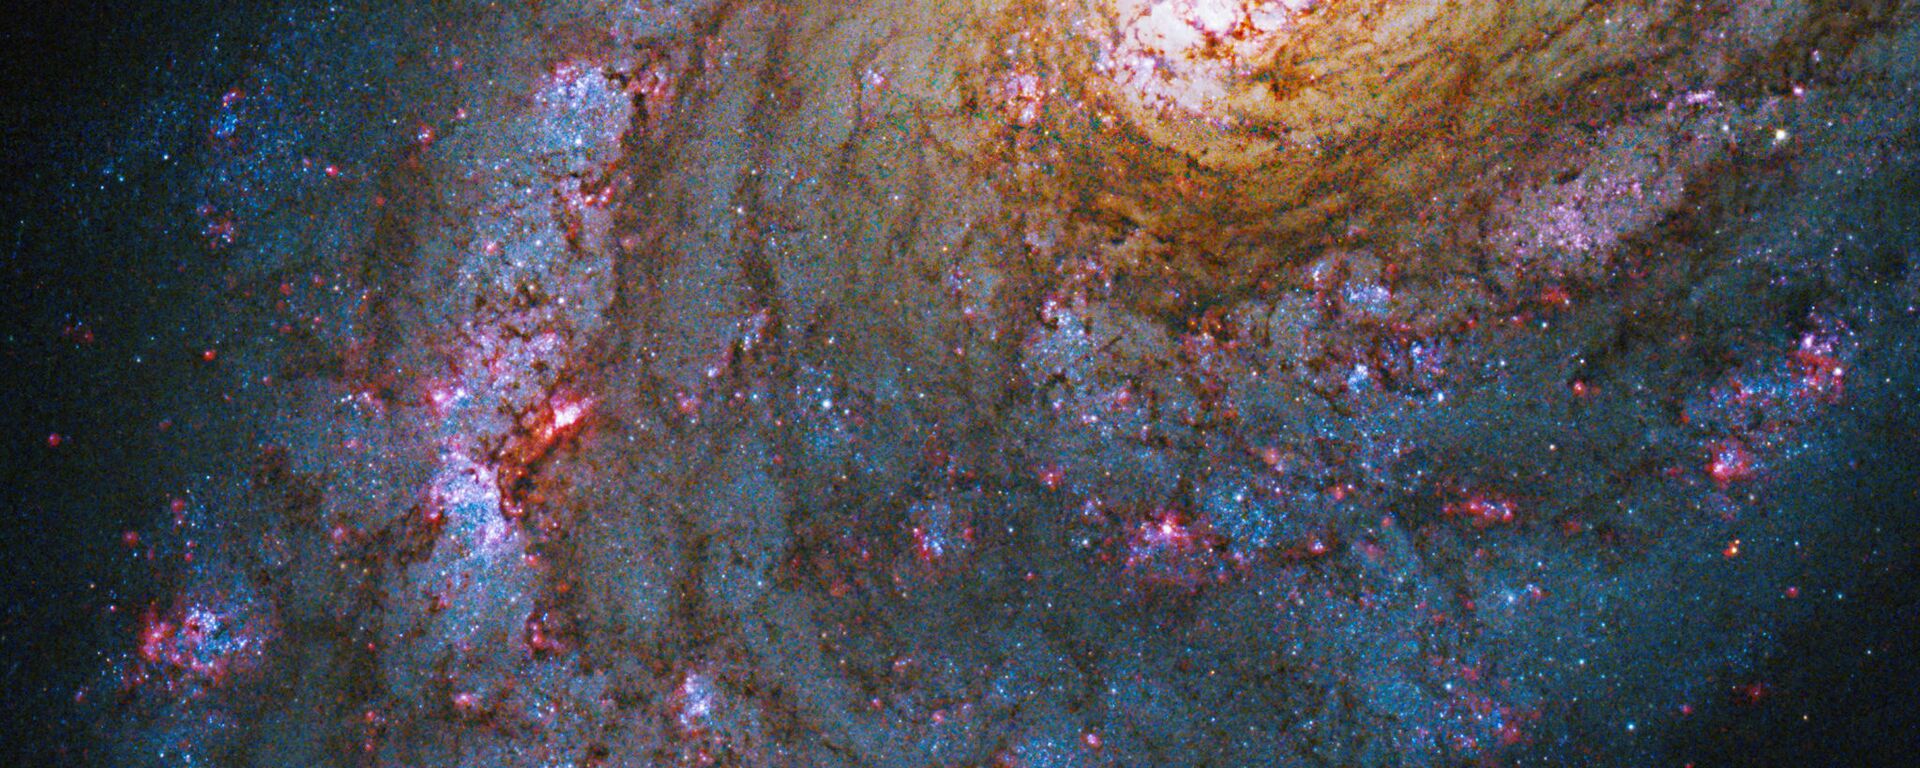 Галактика NGC 5248 в созвездии Волопас - Sputnik Латвия, 1920, 16.12.2020